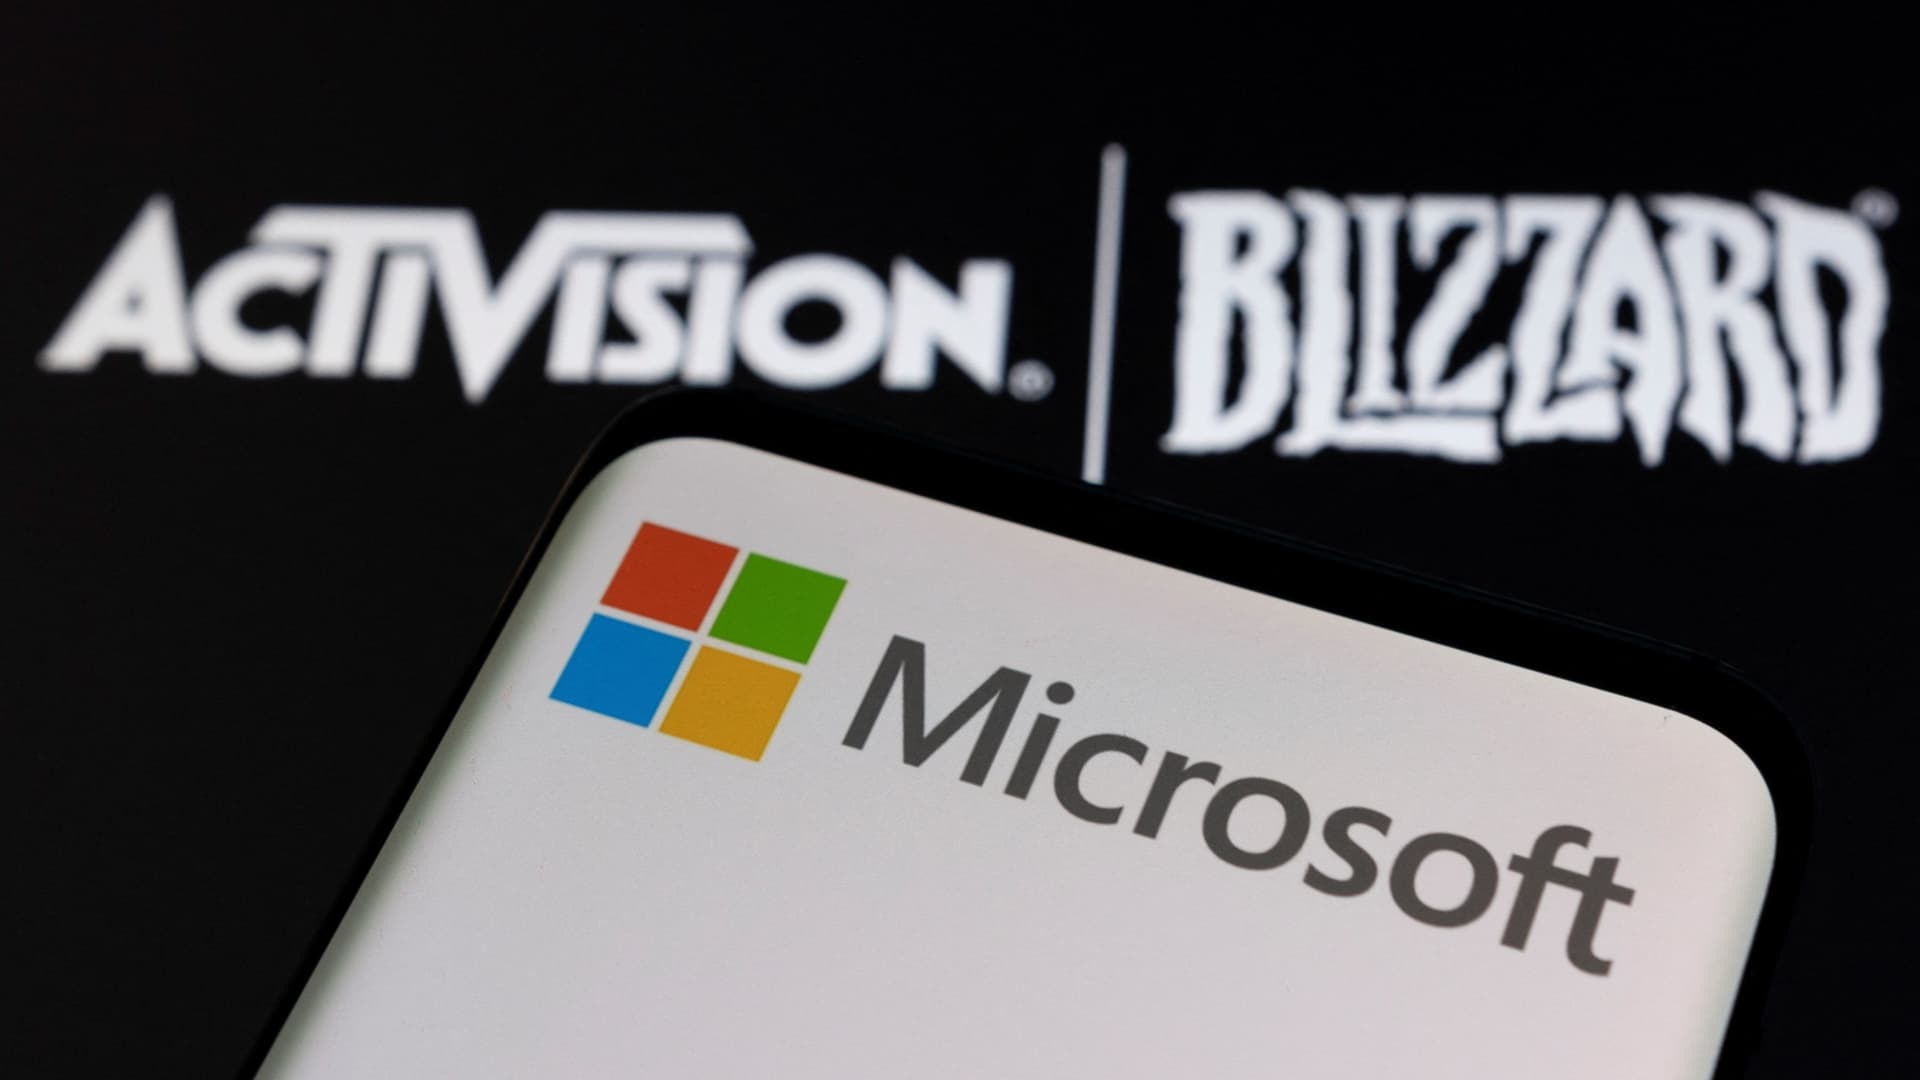 تمت الموافقة على استحواذ Microsoft-Activisson على Blizzard من قبل هيئة سوق المال البريطانية (CMA).